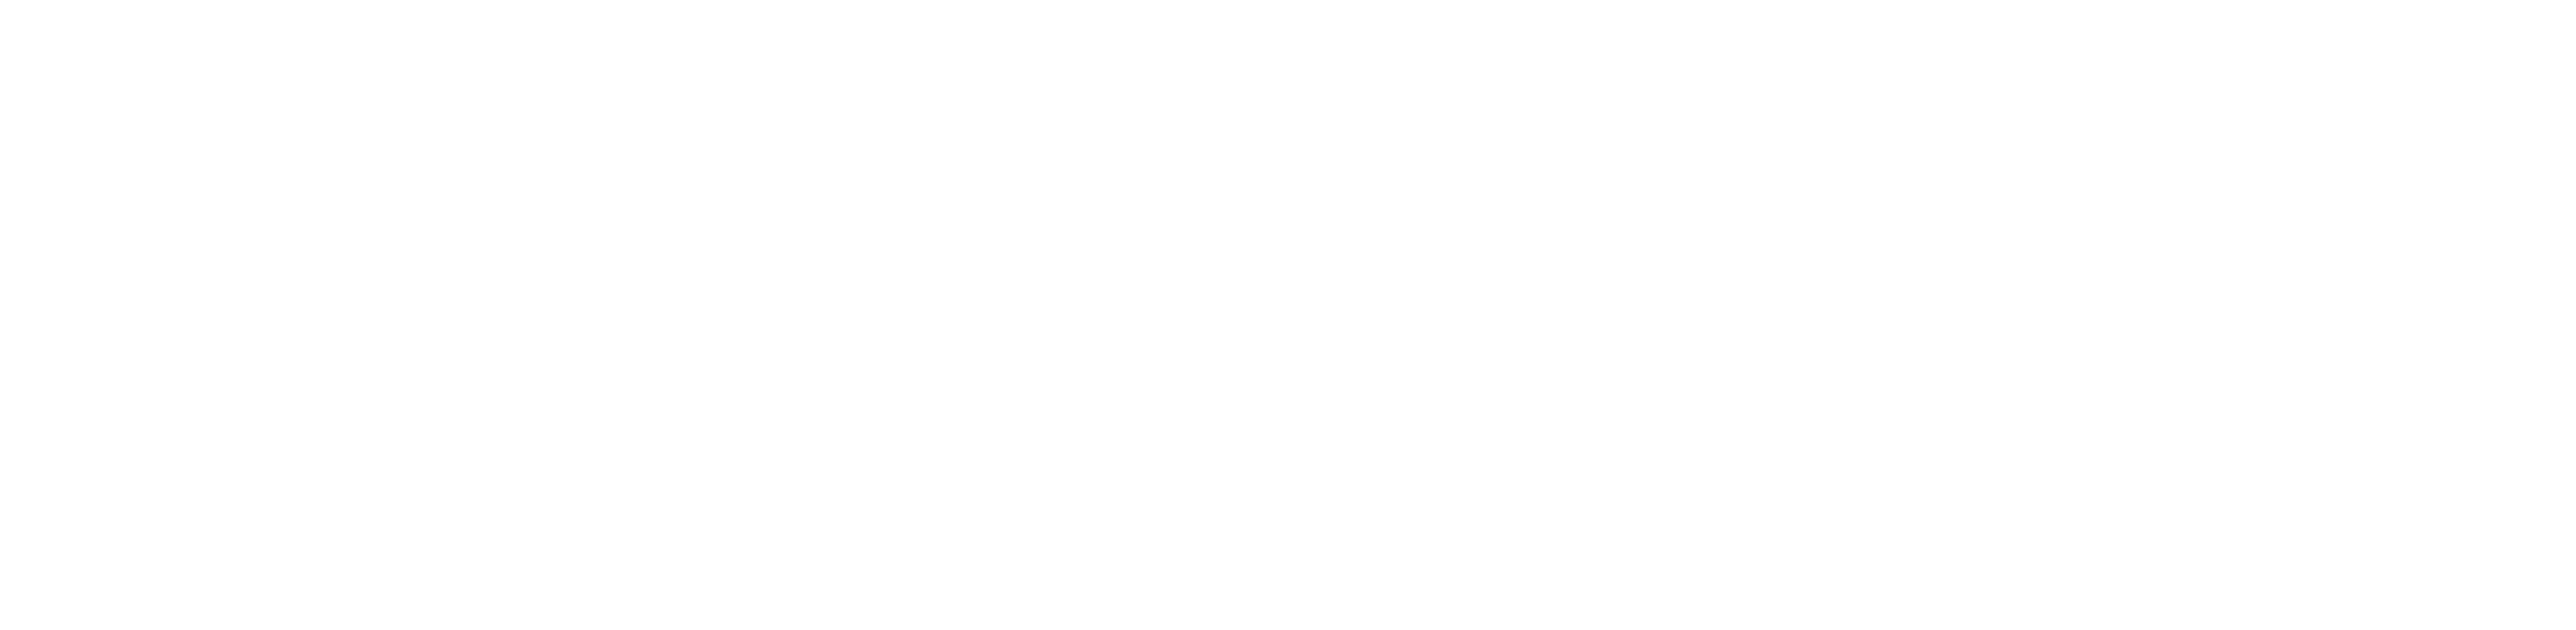 OKKY 로고